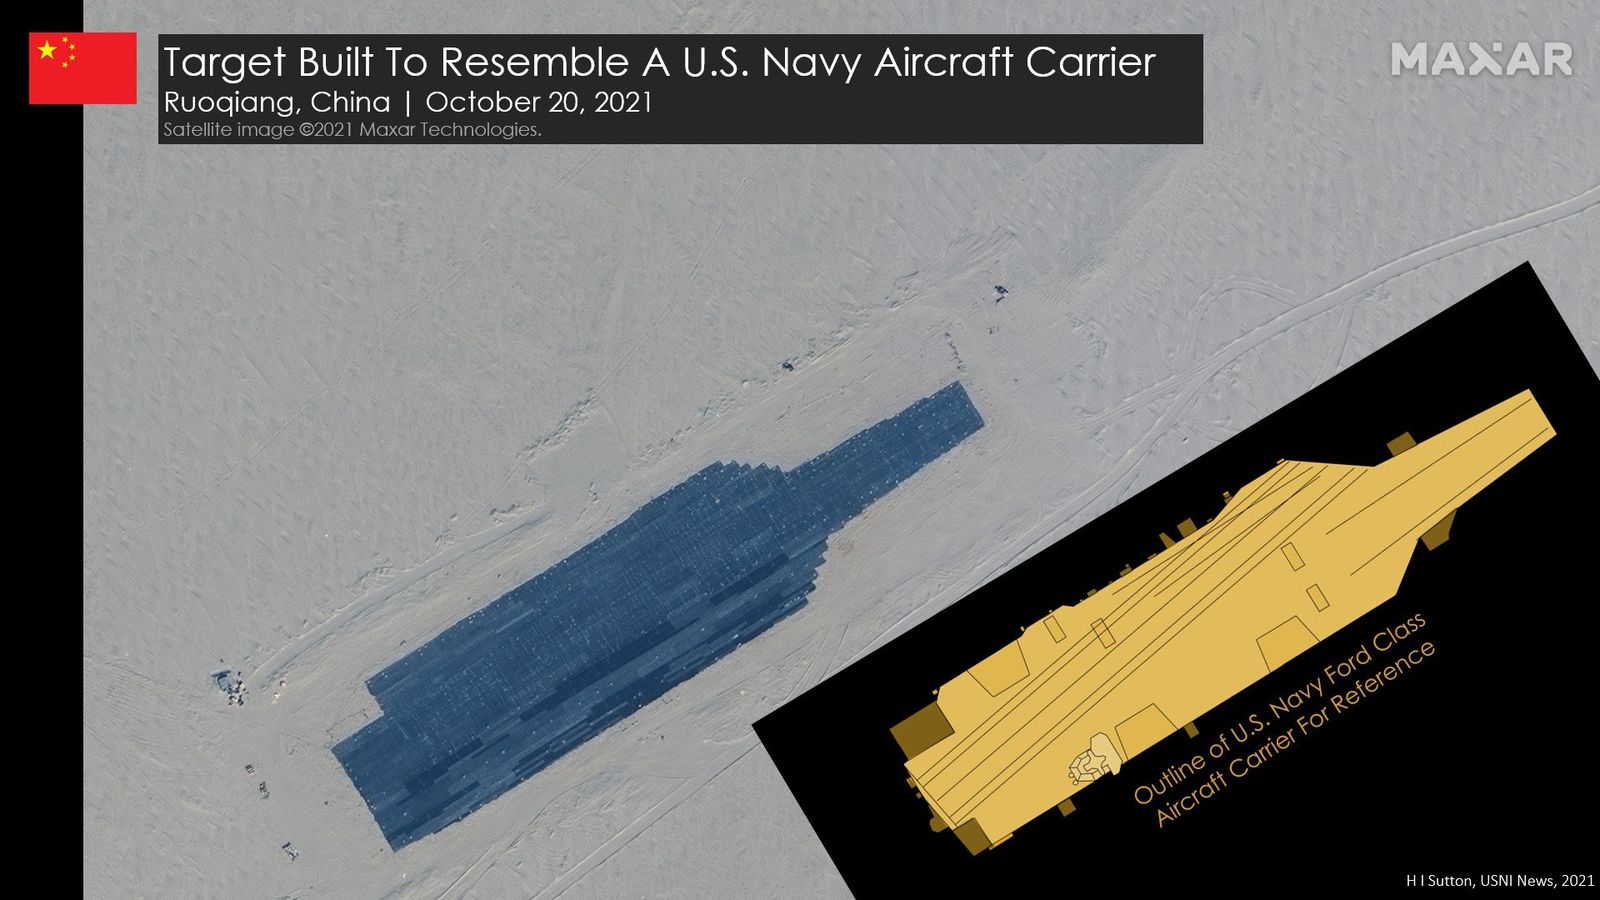 صورة التقطت بواسطة الأقمار الصناعية لهدف على شكل حاملة طائرات أميركية في صحراء تاكلامكان وسط الصين في 20 أكتوبر 2021. - https://news.usni.org/